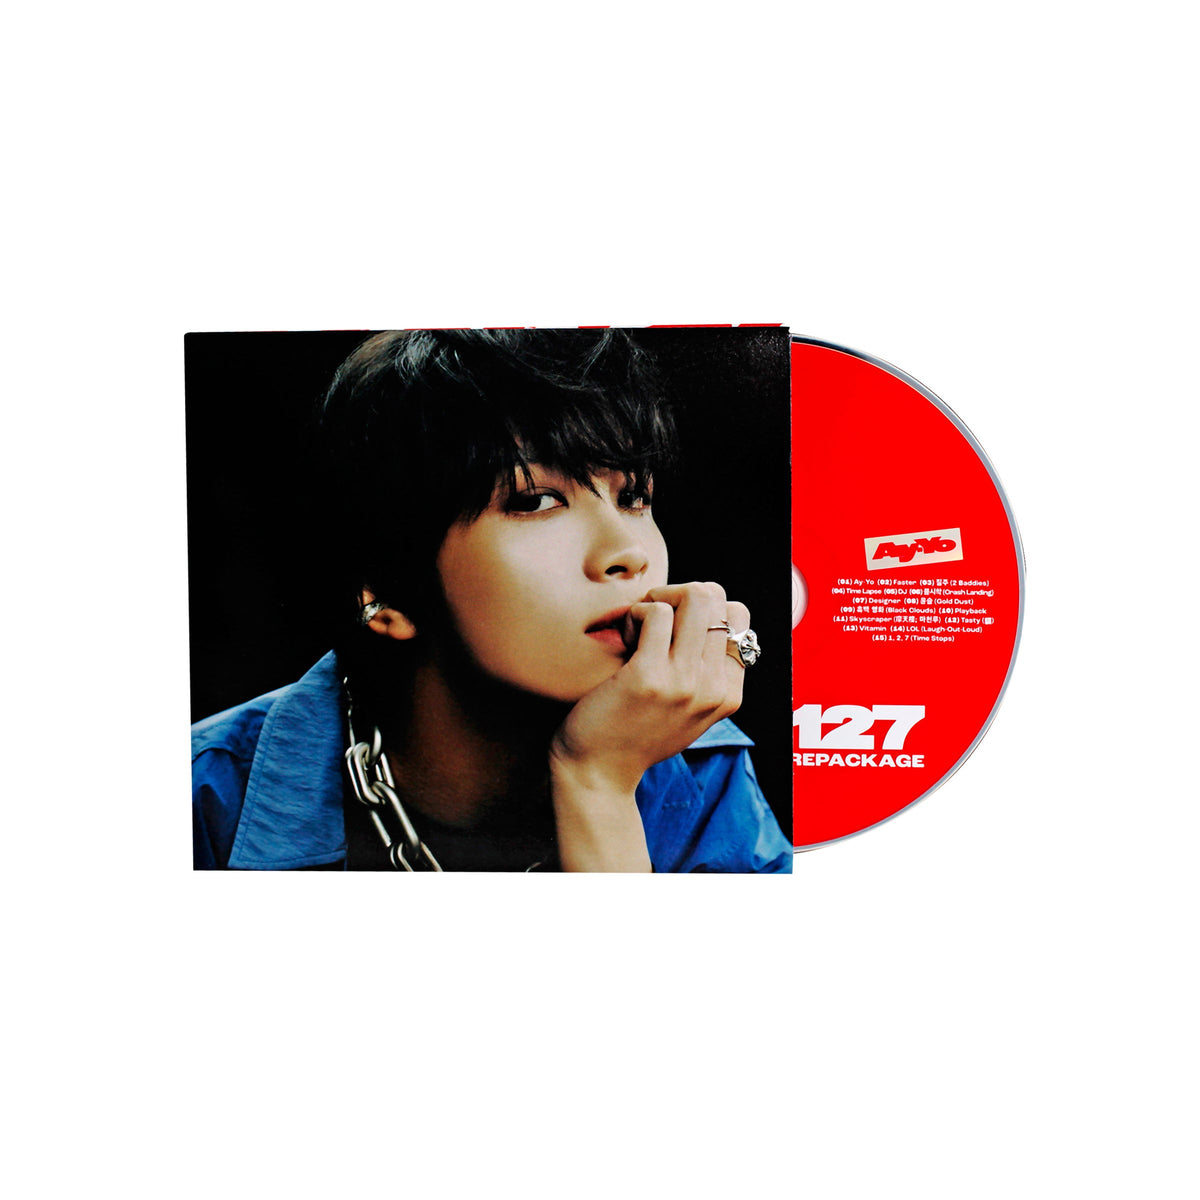 NCT 127 Ay Yo 4th Album Repackage - Digipack Version Haechan Ver main product image